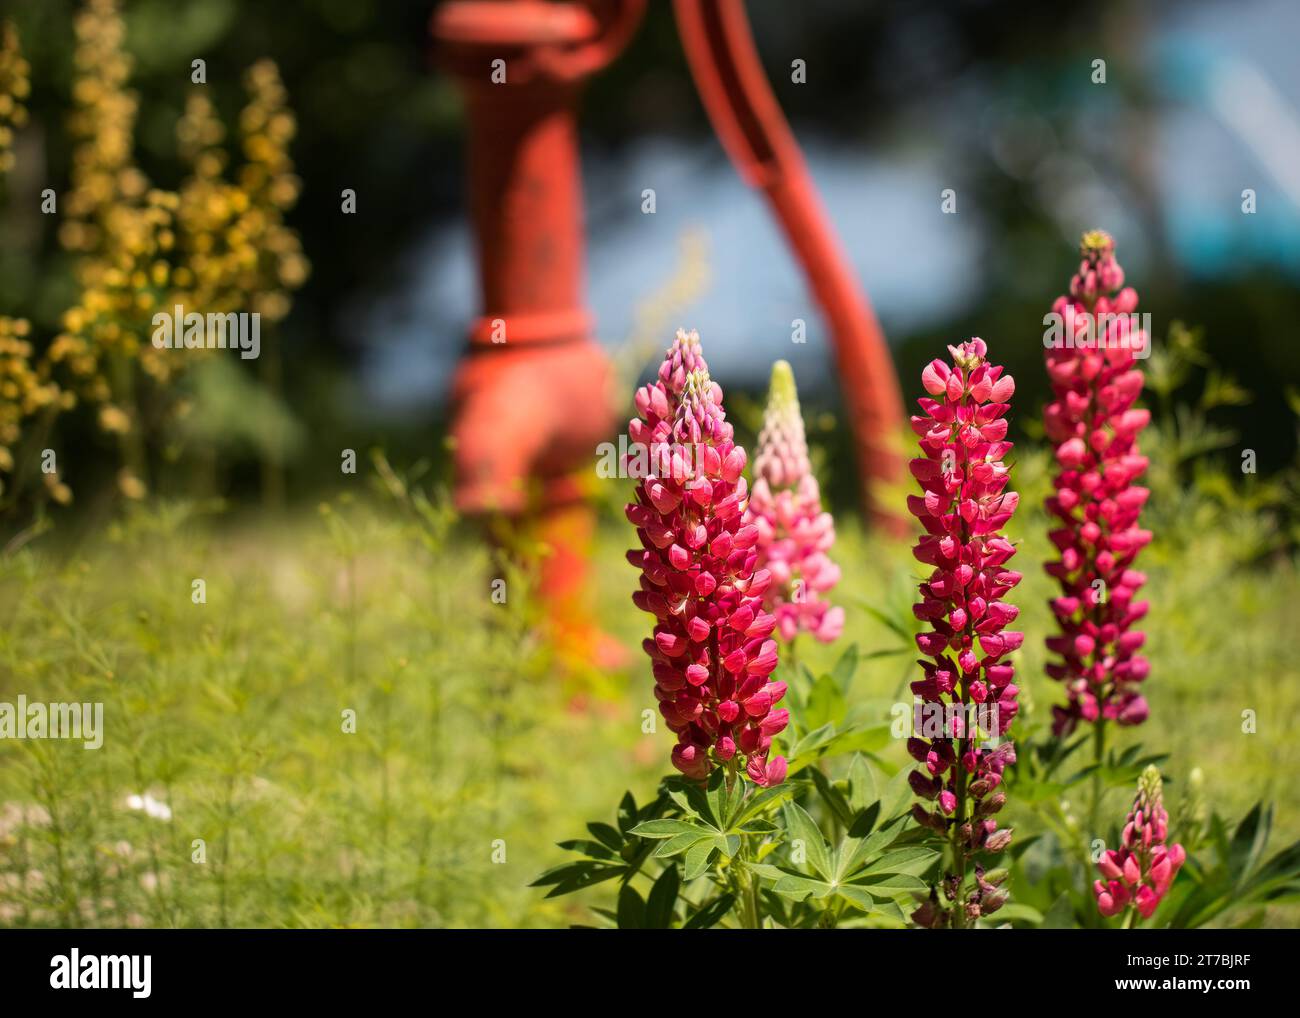 Primo piano di Lupine rossa/rosa (LUPINUS POLYPHYLLUS) che cresce in giardino con una vecchia pompa d'acqua rossa e fiori gialli su sfondo bokeh Foto Stock